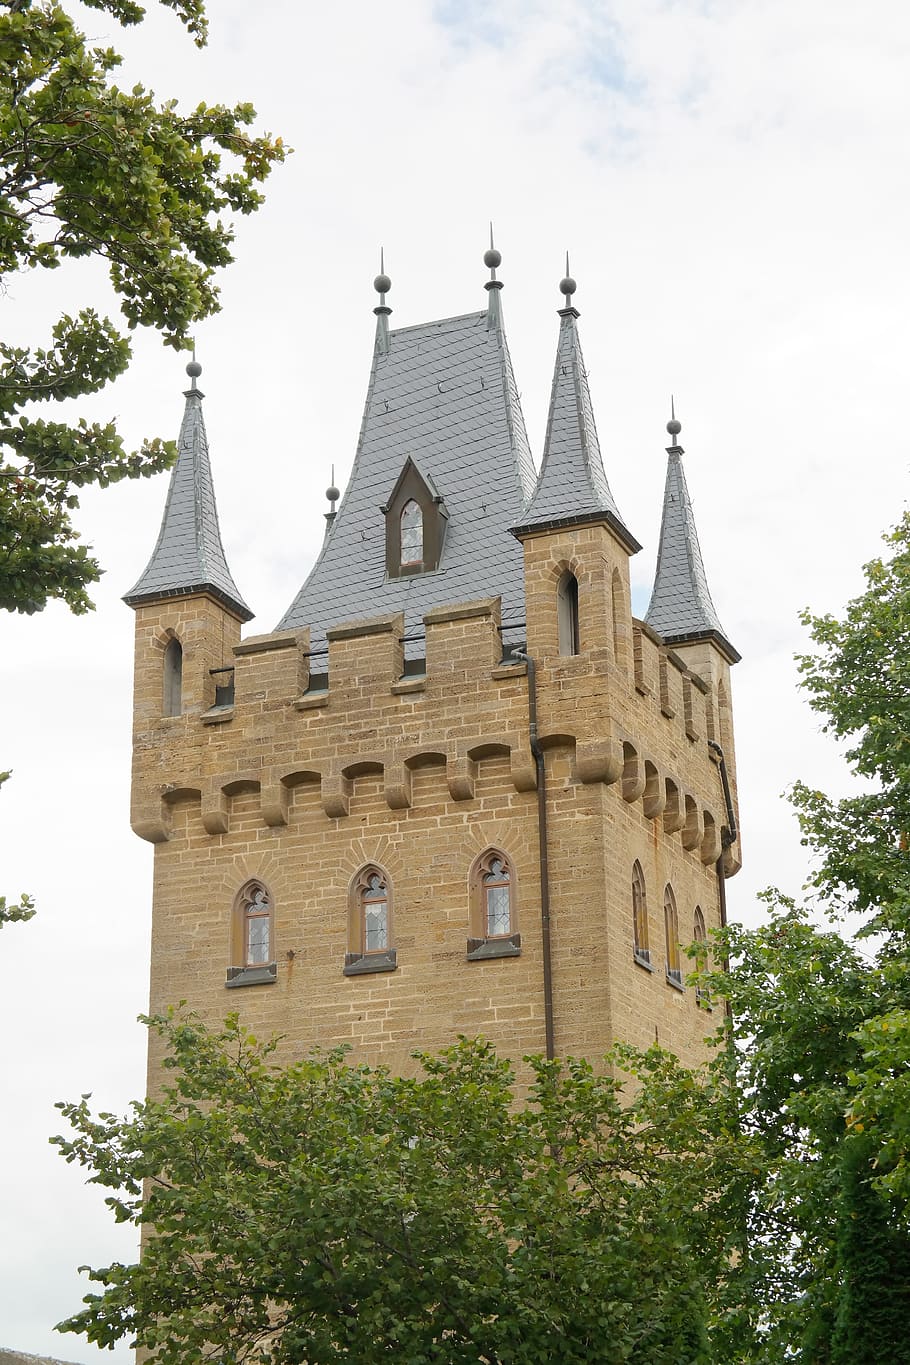 torre de la puerta, torre, castillo, fortaleza, hohenzollern, castillo de hohenzollern, castillo ancestral, baden württemberg, alemania, casa imperial alemana